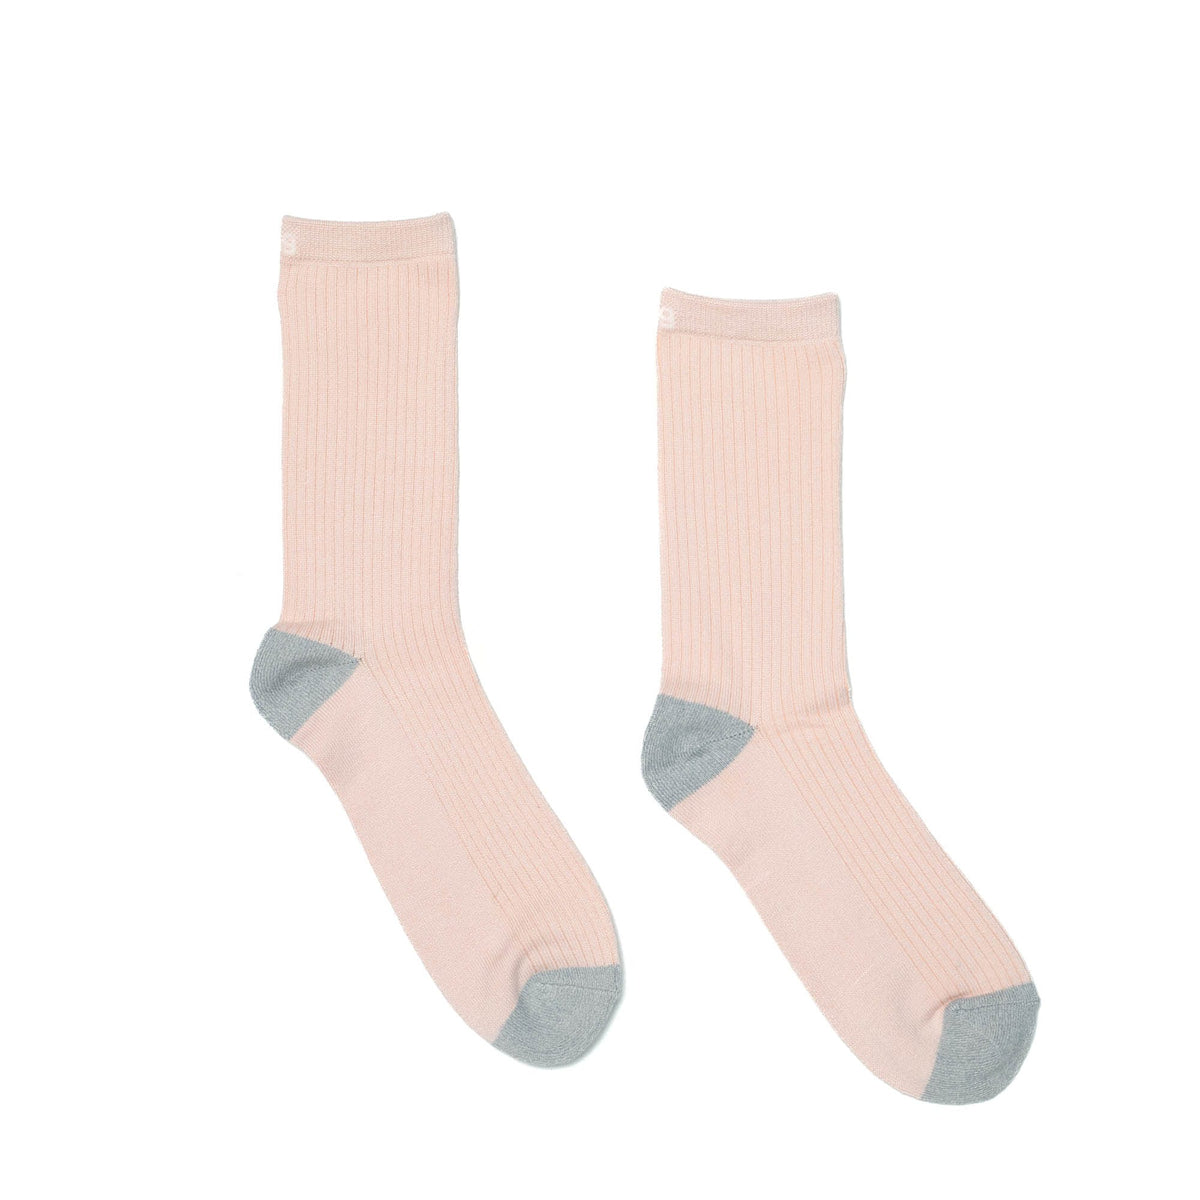 Trotter Socks 6pk